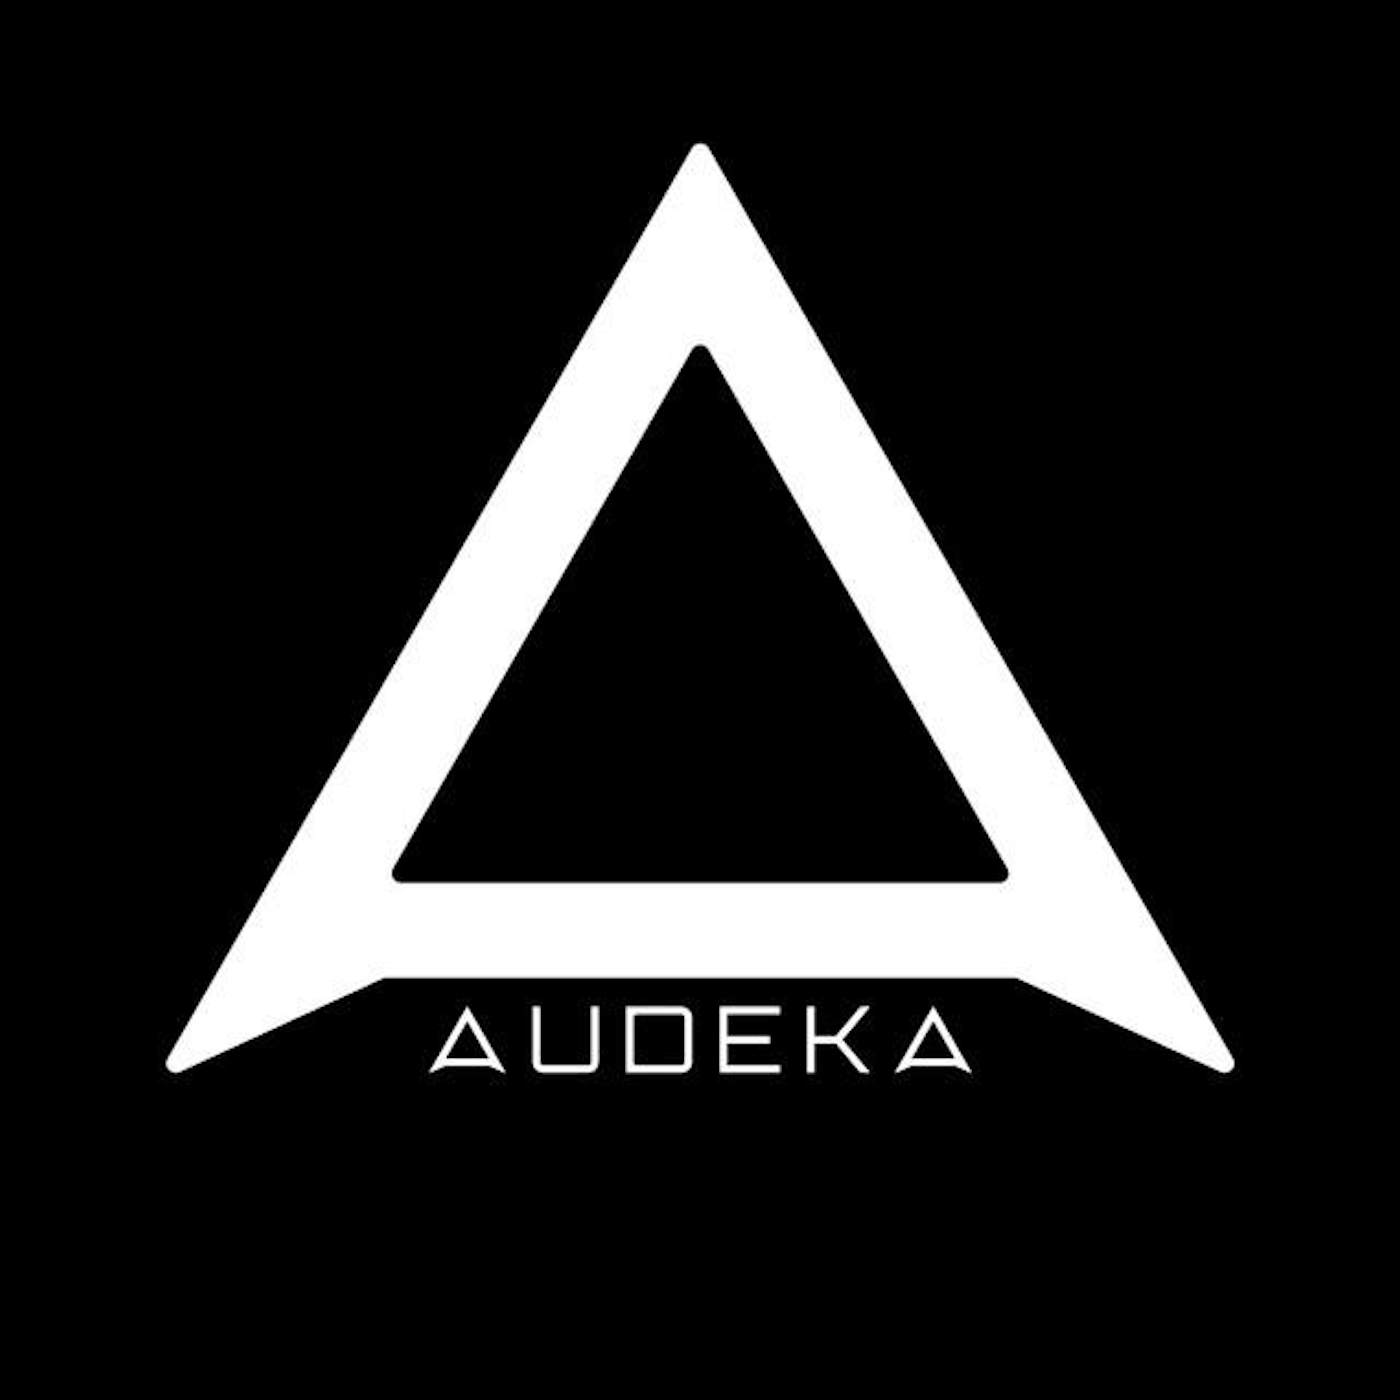 Audeka